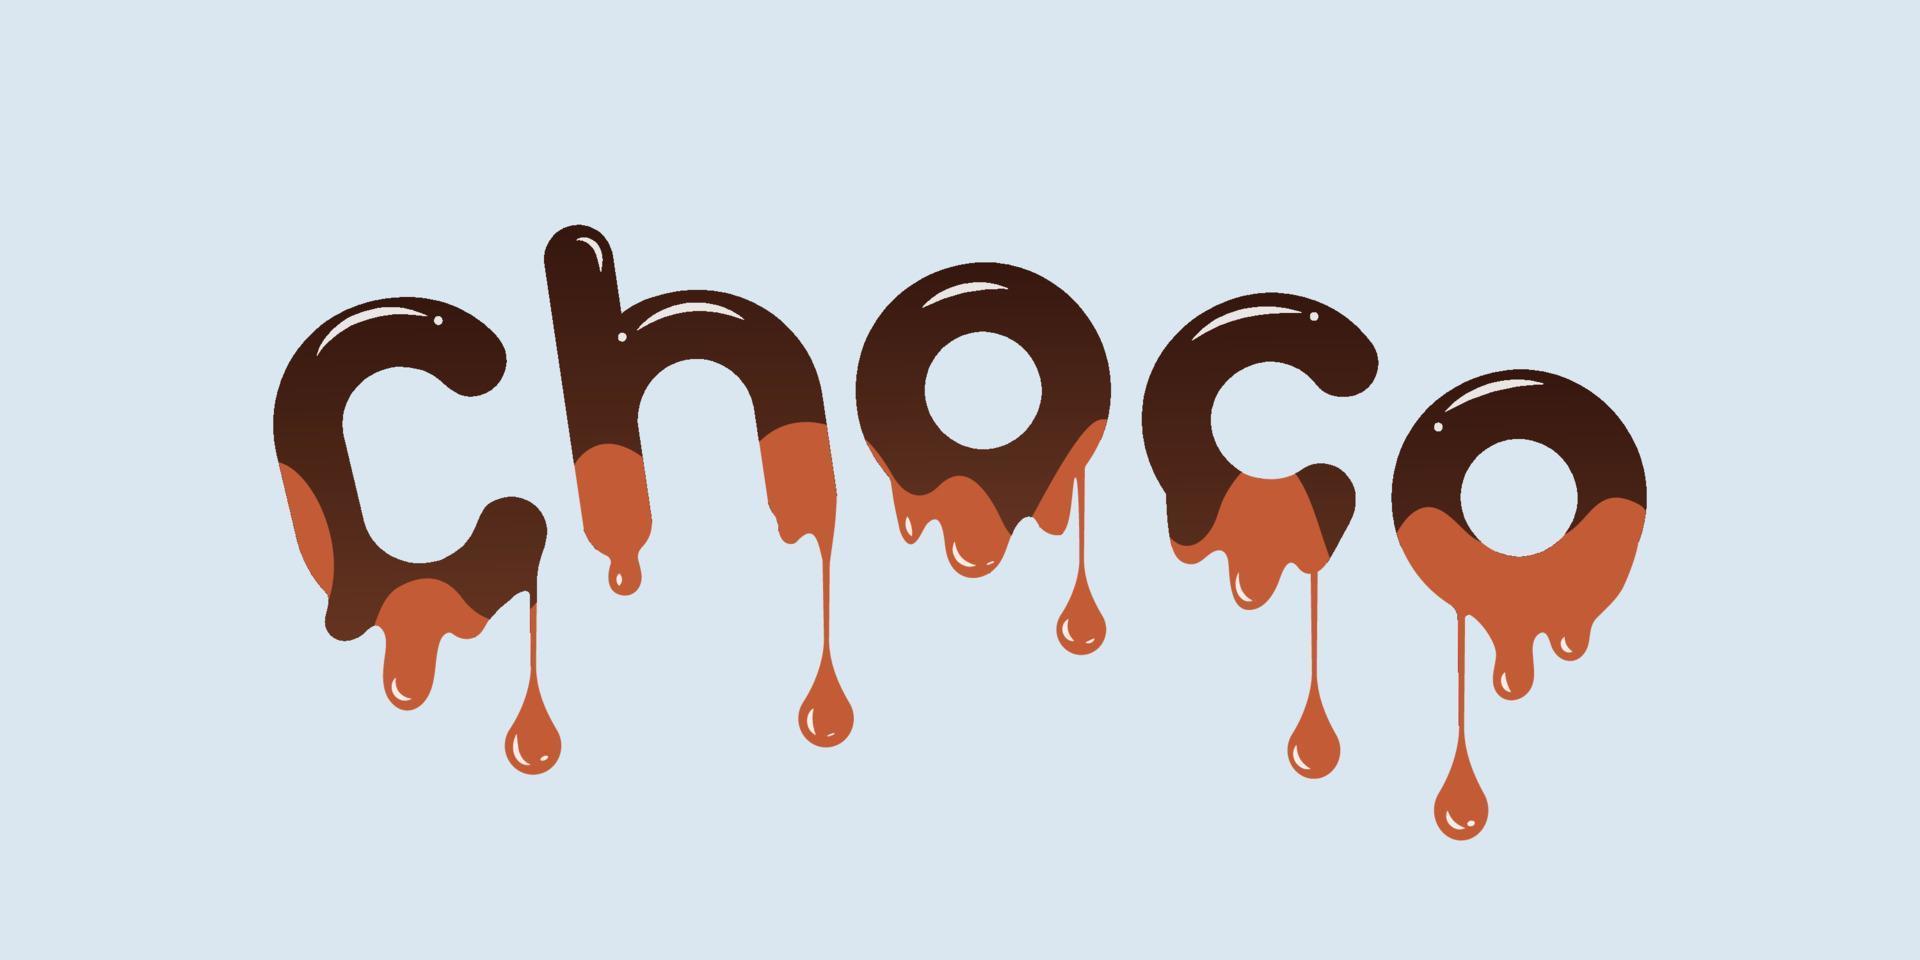 choco - pancarta de chocolate. ilustración vectorial de diseño. vector